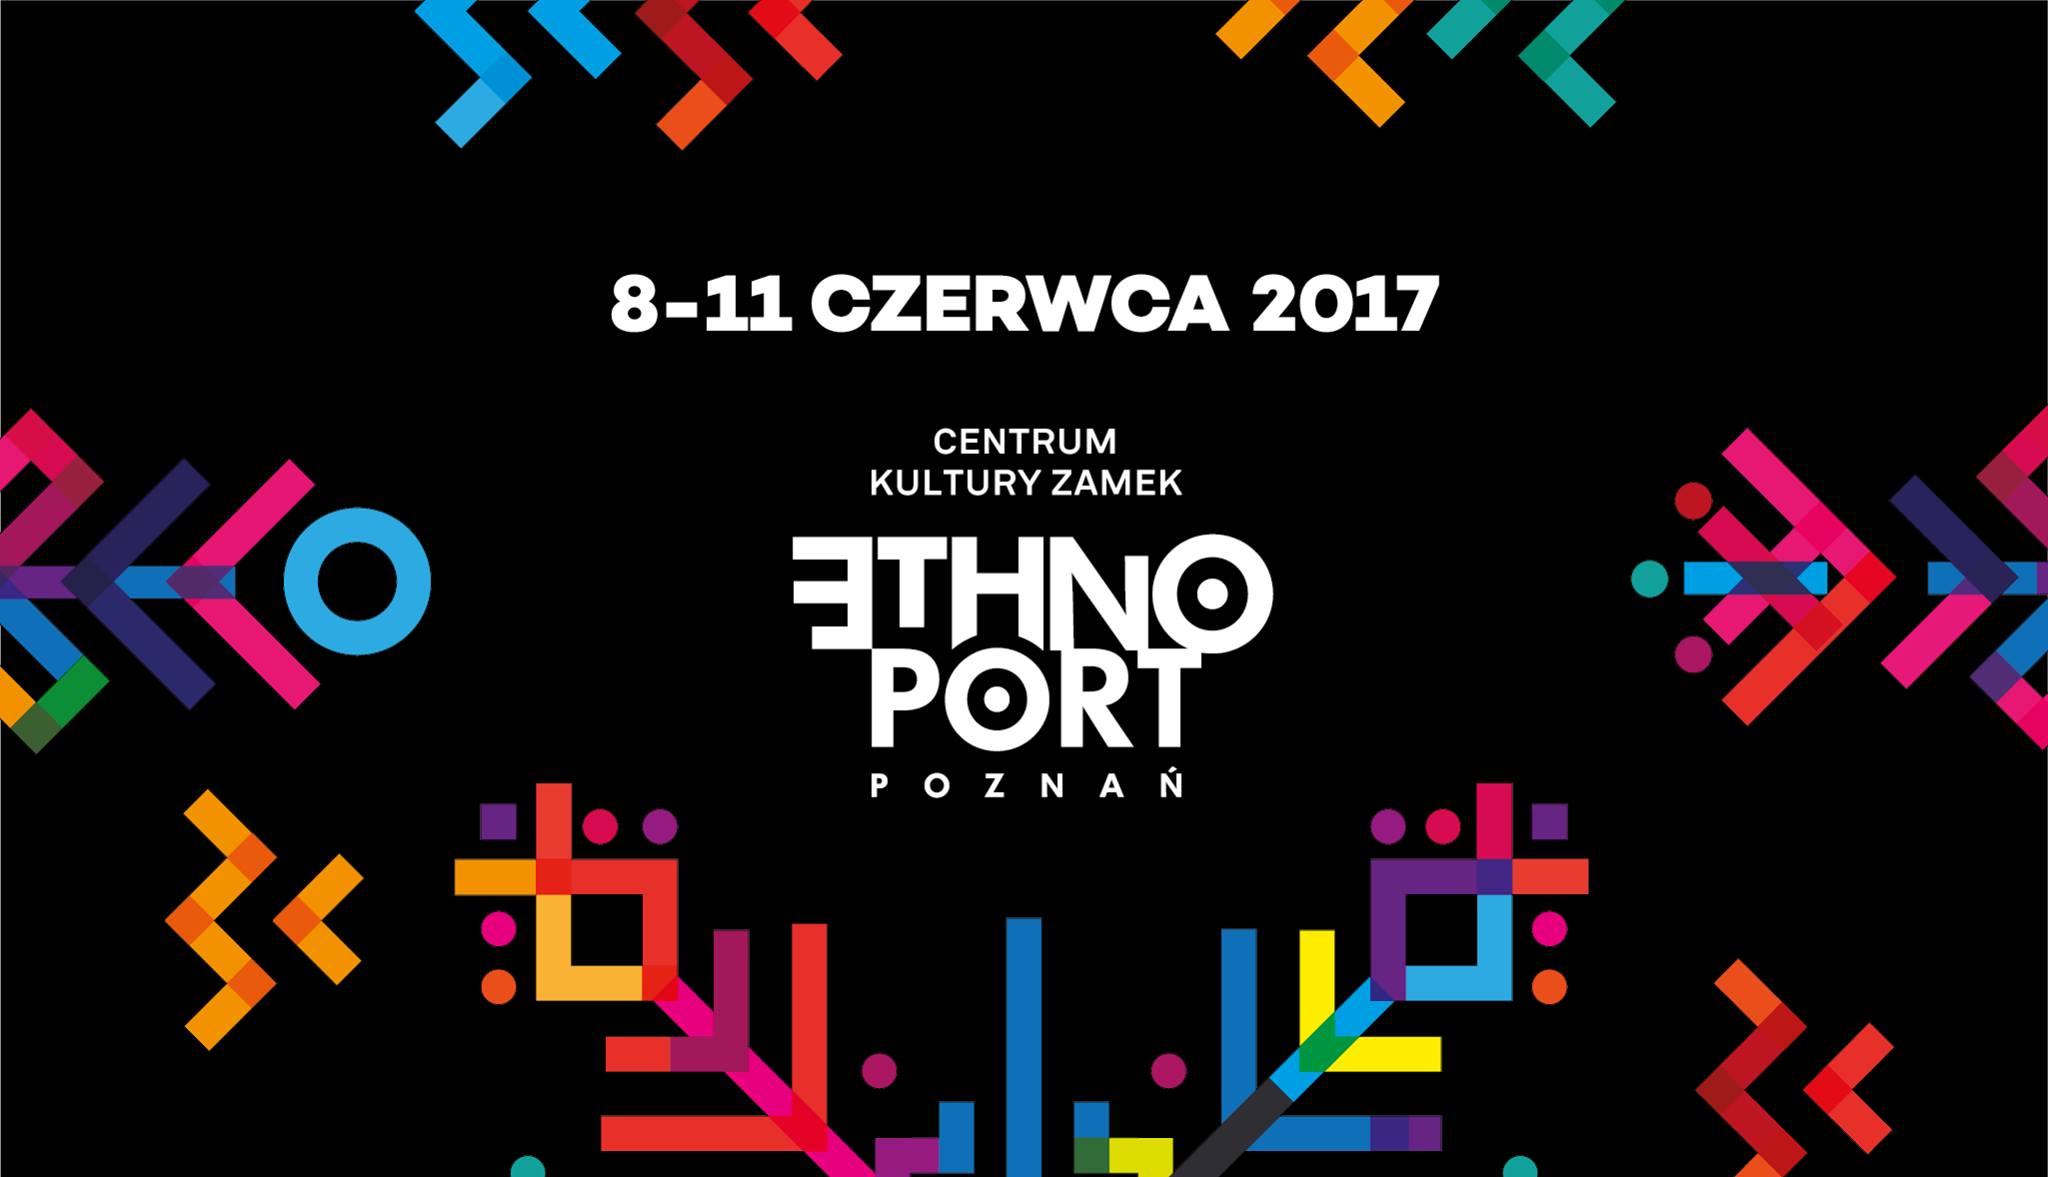 Ethno Port Poznań